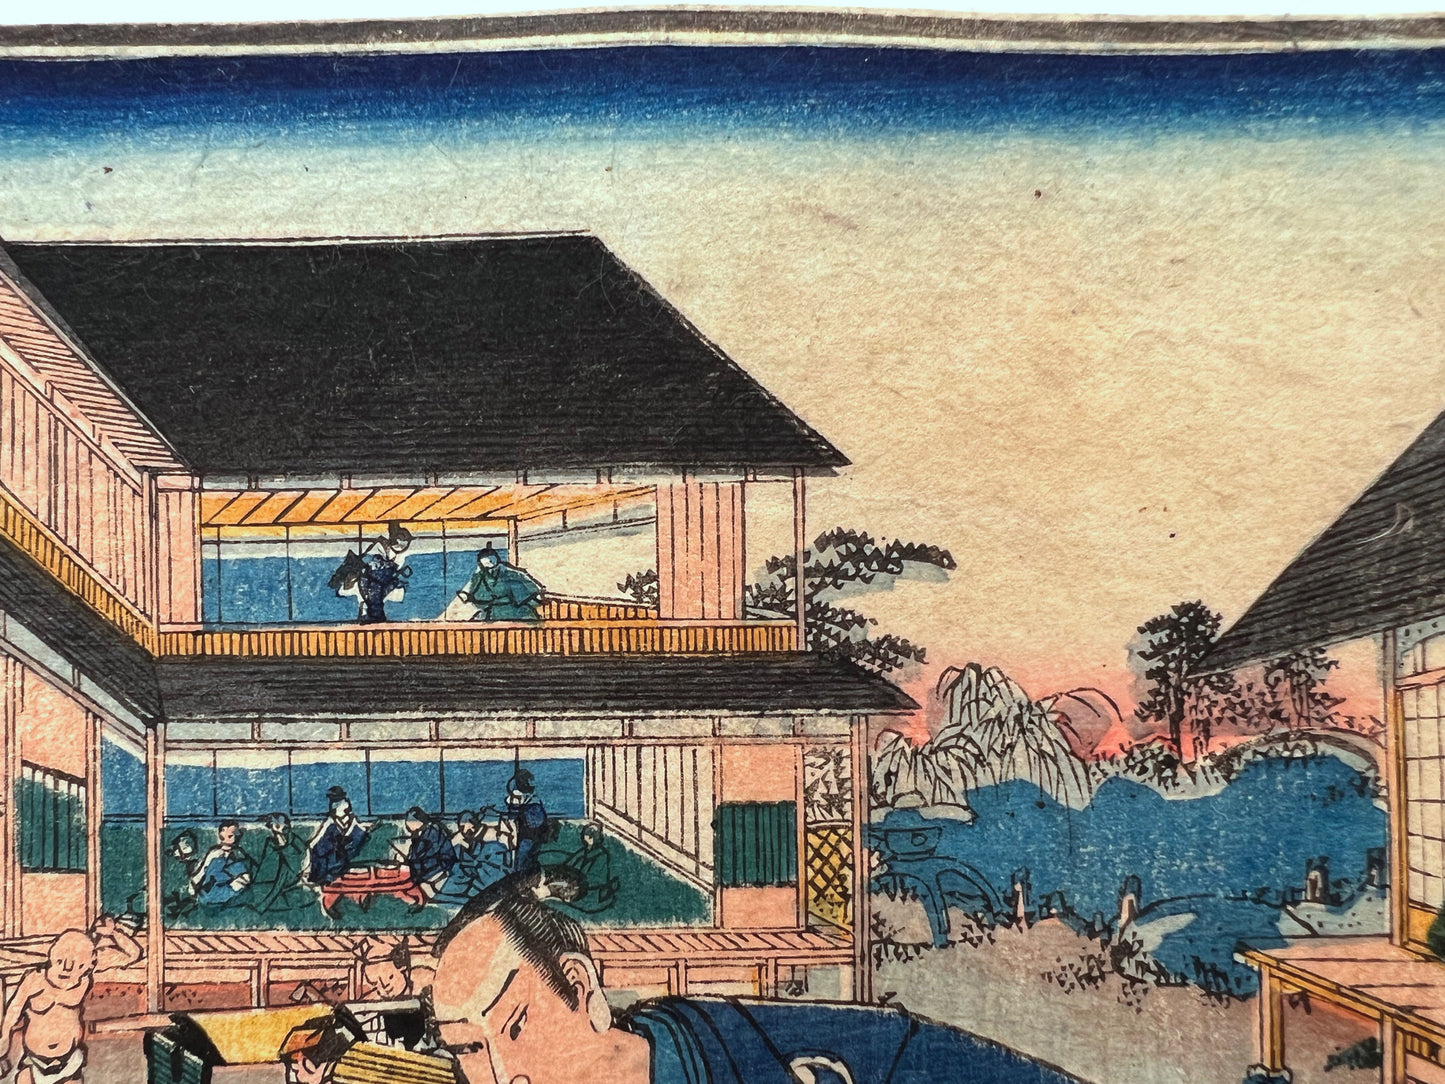 estampe japonaise rencontre discrete de samourai ronin dans la cour intérieure d'une maison de thé, personnages à l'étage des maisons de thé